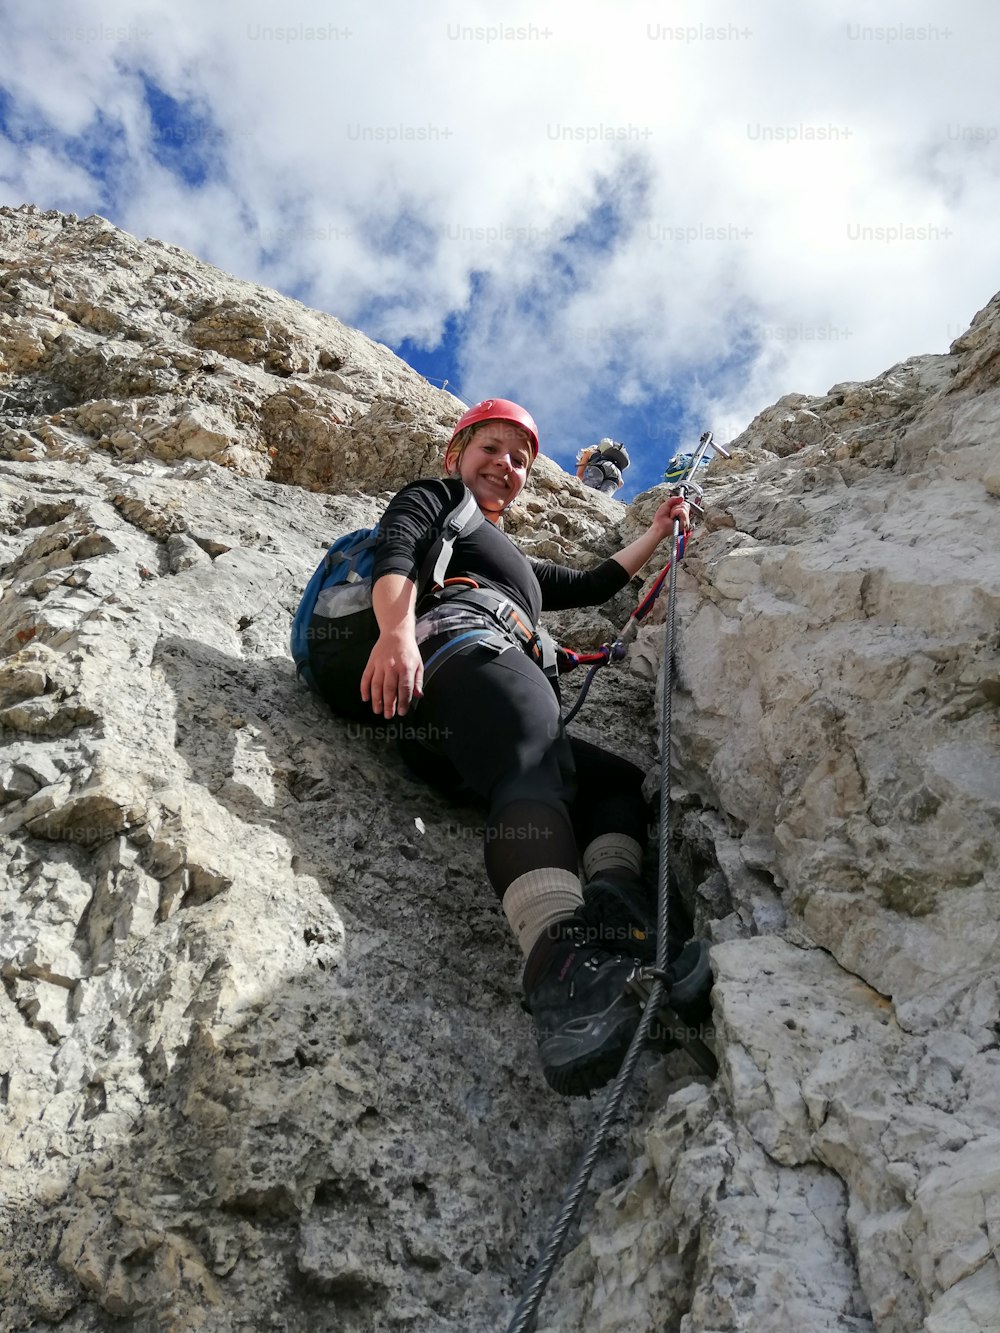 Vista vertical de una atractiva escaladora rubia en una empinada vía ferrata en los Dolomitas italianos con una gran vista detrás